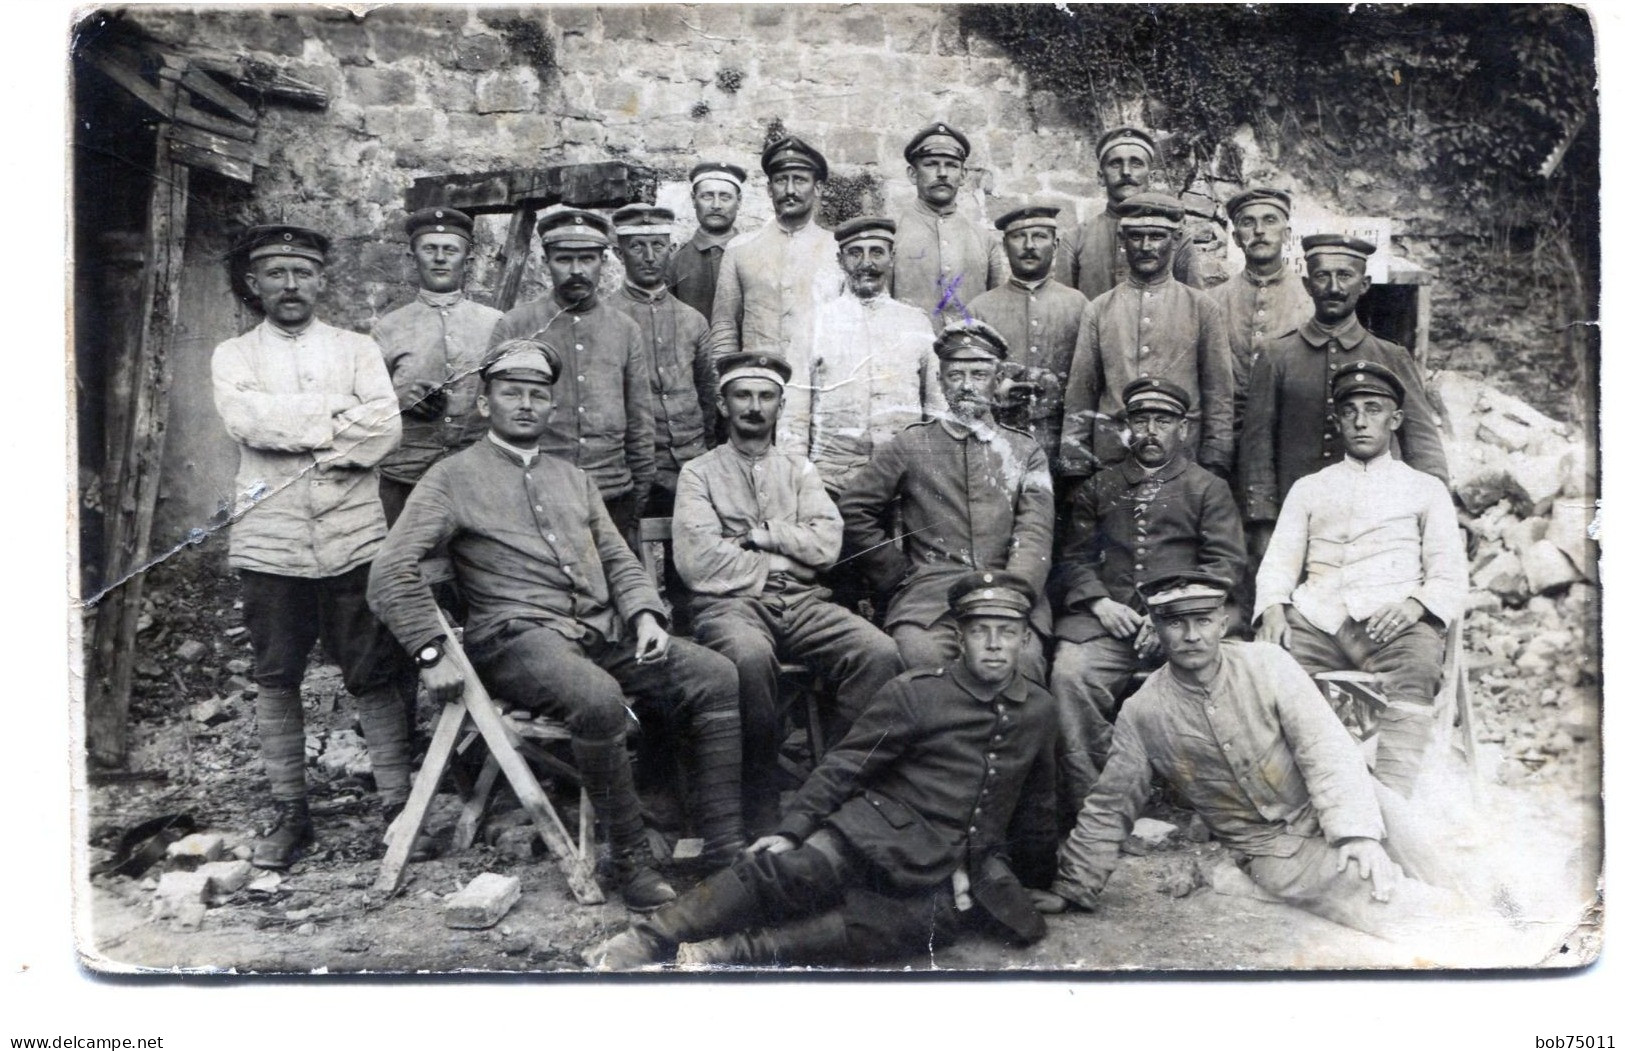 Carte Photo D'officiers Et De Soldats Allemand Dans Une Ferme A L'arrière Du Front En 14-18 - 1914-18